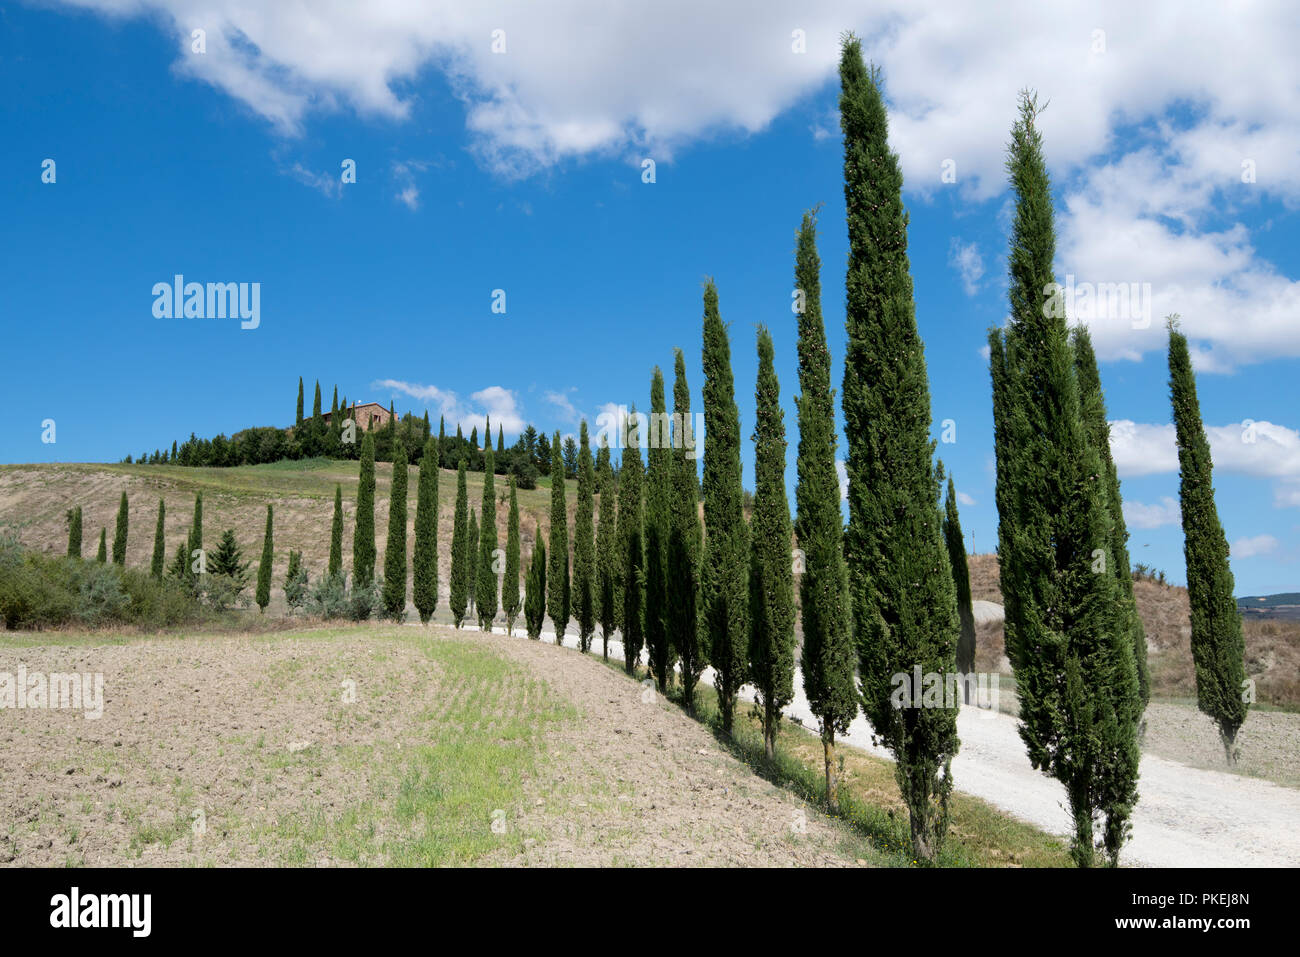 Un cyprès allée bordée d'arbres sur une propriété à Val d'Orcia, Toscane Italie Europe EU Banque D'Images